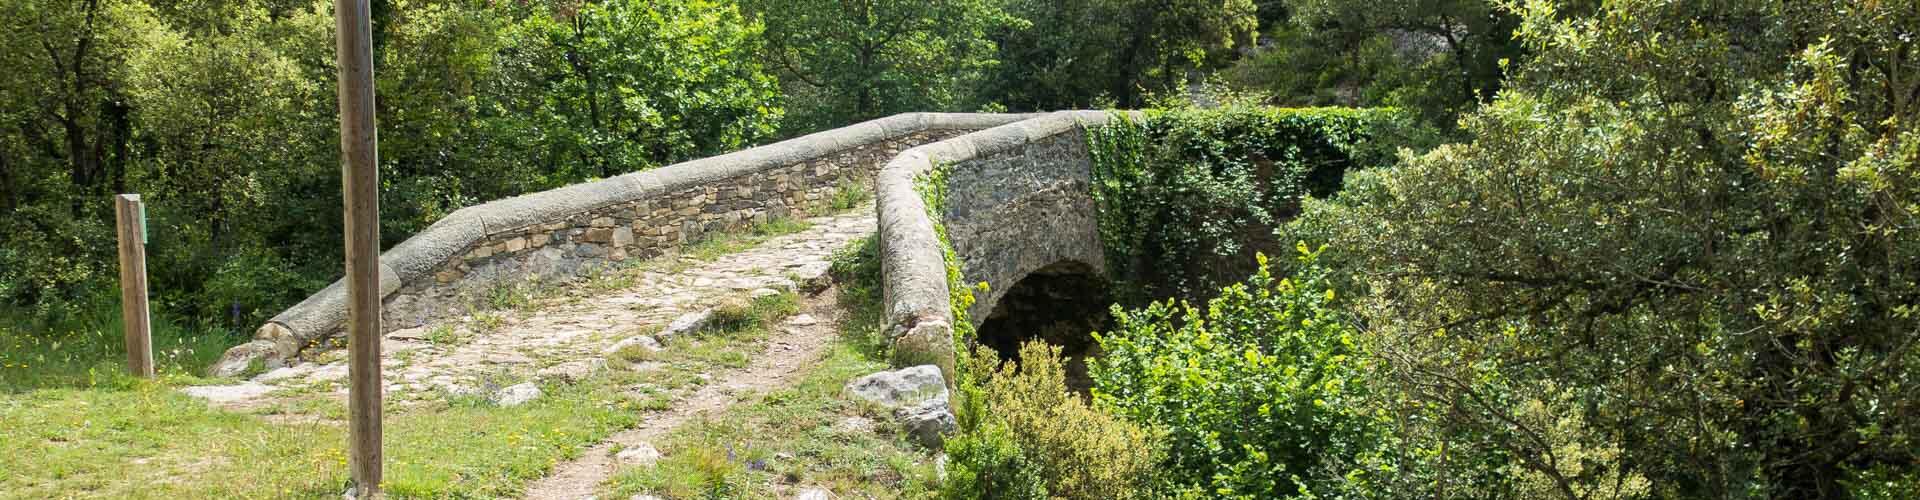 Pont del molí Bernat